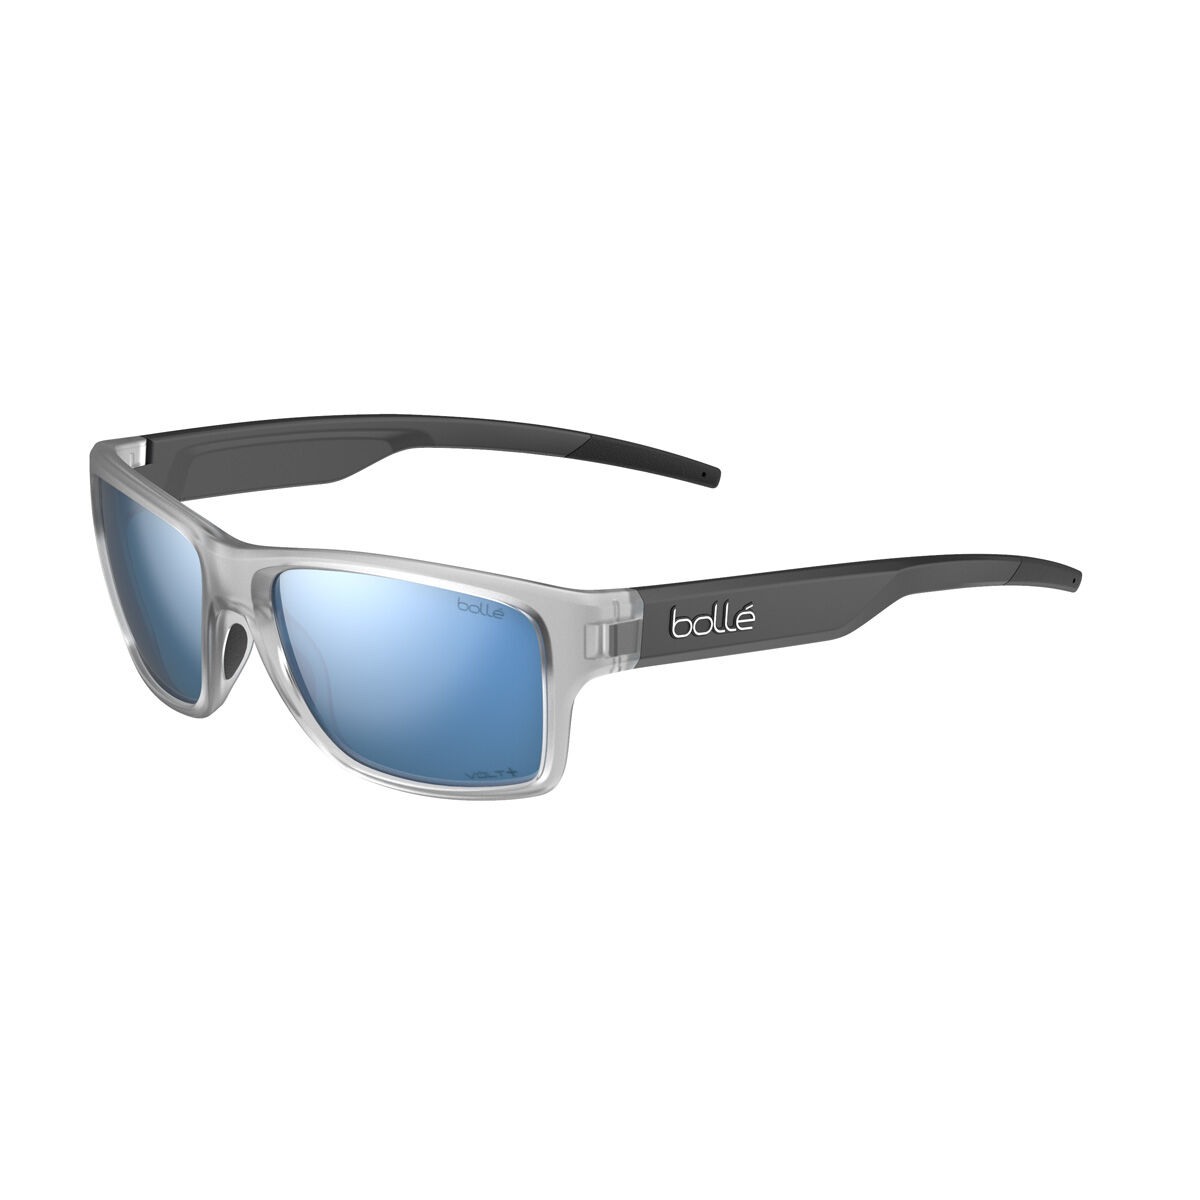 Buy Shiny Black : Bolle Anaconda Sunglasses at Amazon.in